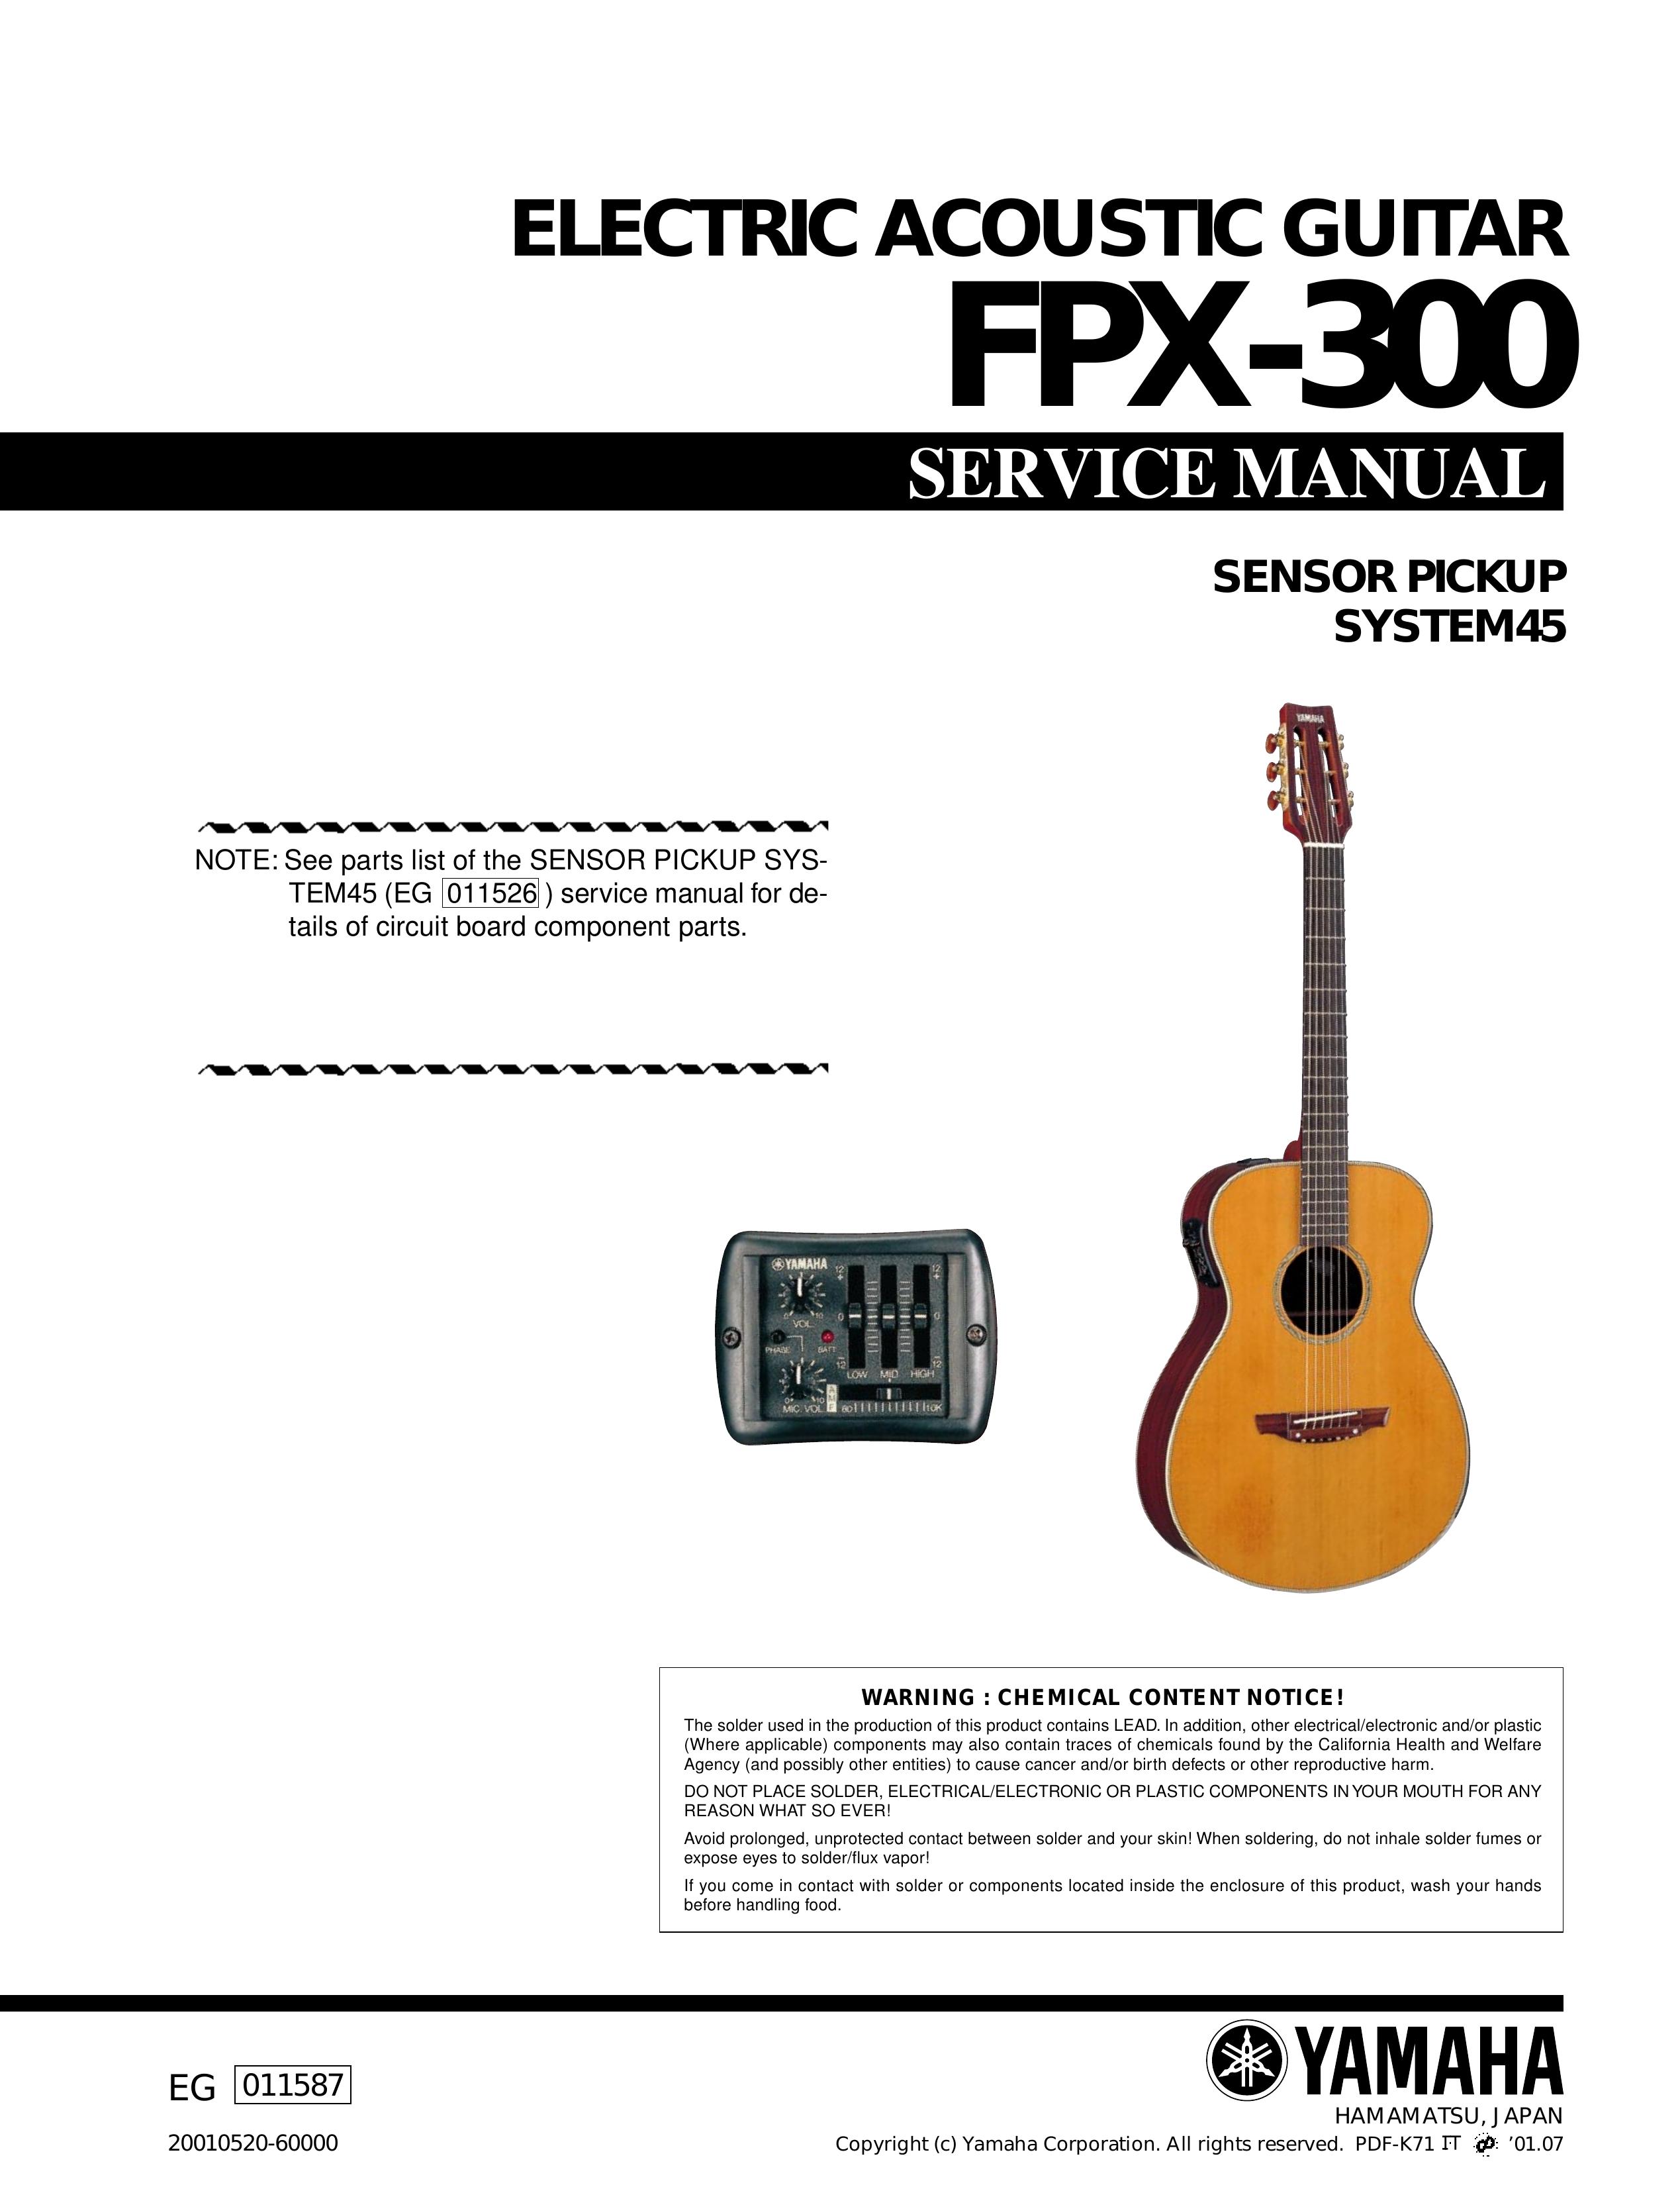 Yamaha FPX-300 Guitar User Manual